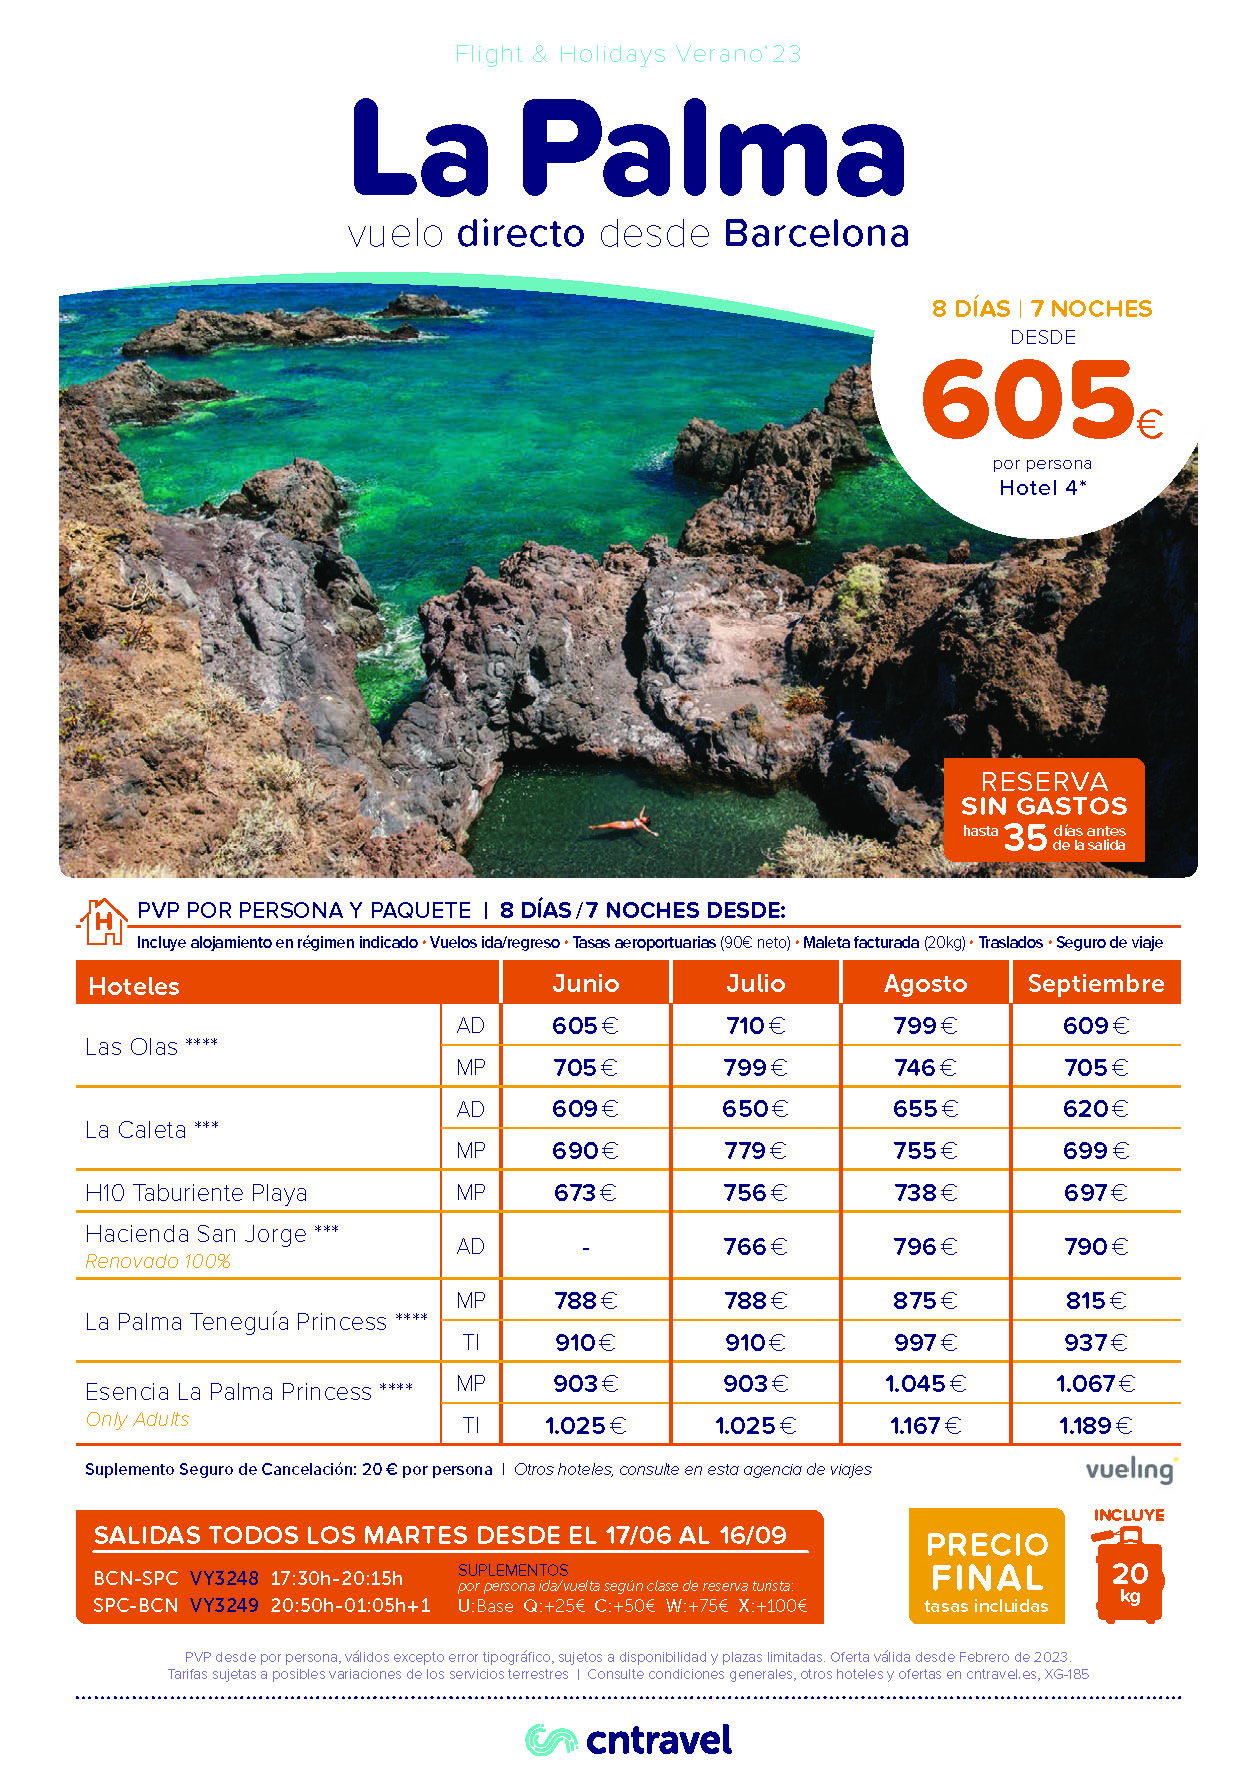 Ofertas CN Travel Junio Julio Agosto Septiembre 2023 Vacaciones en La Palma 8 dias AD MP Todo Incluido vuelo directo desde Barcelona